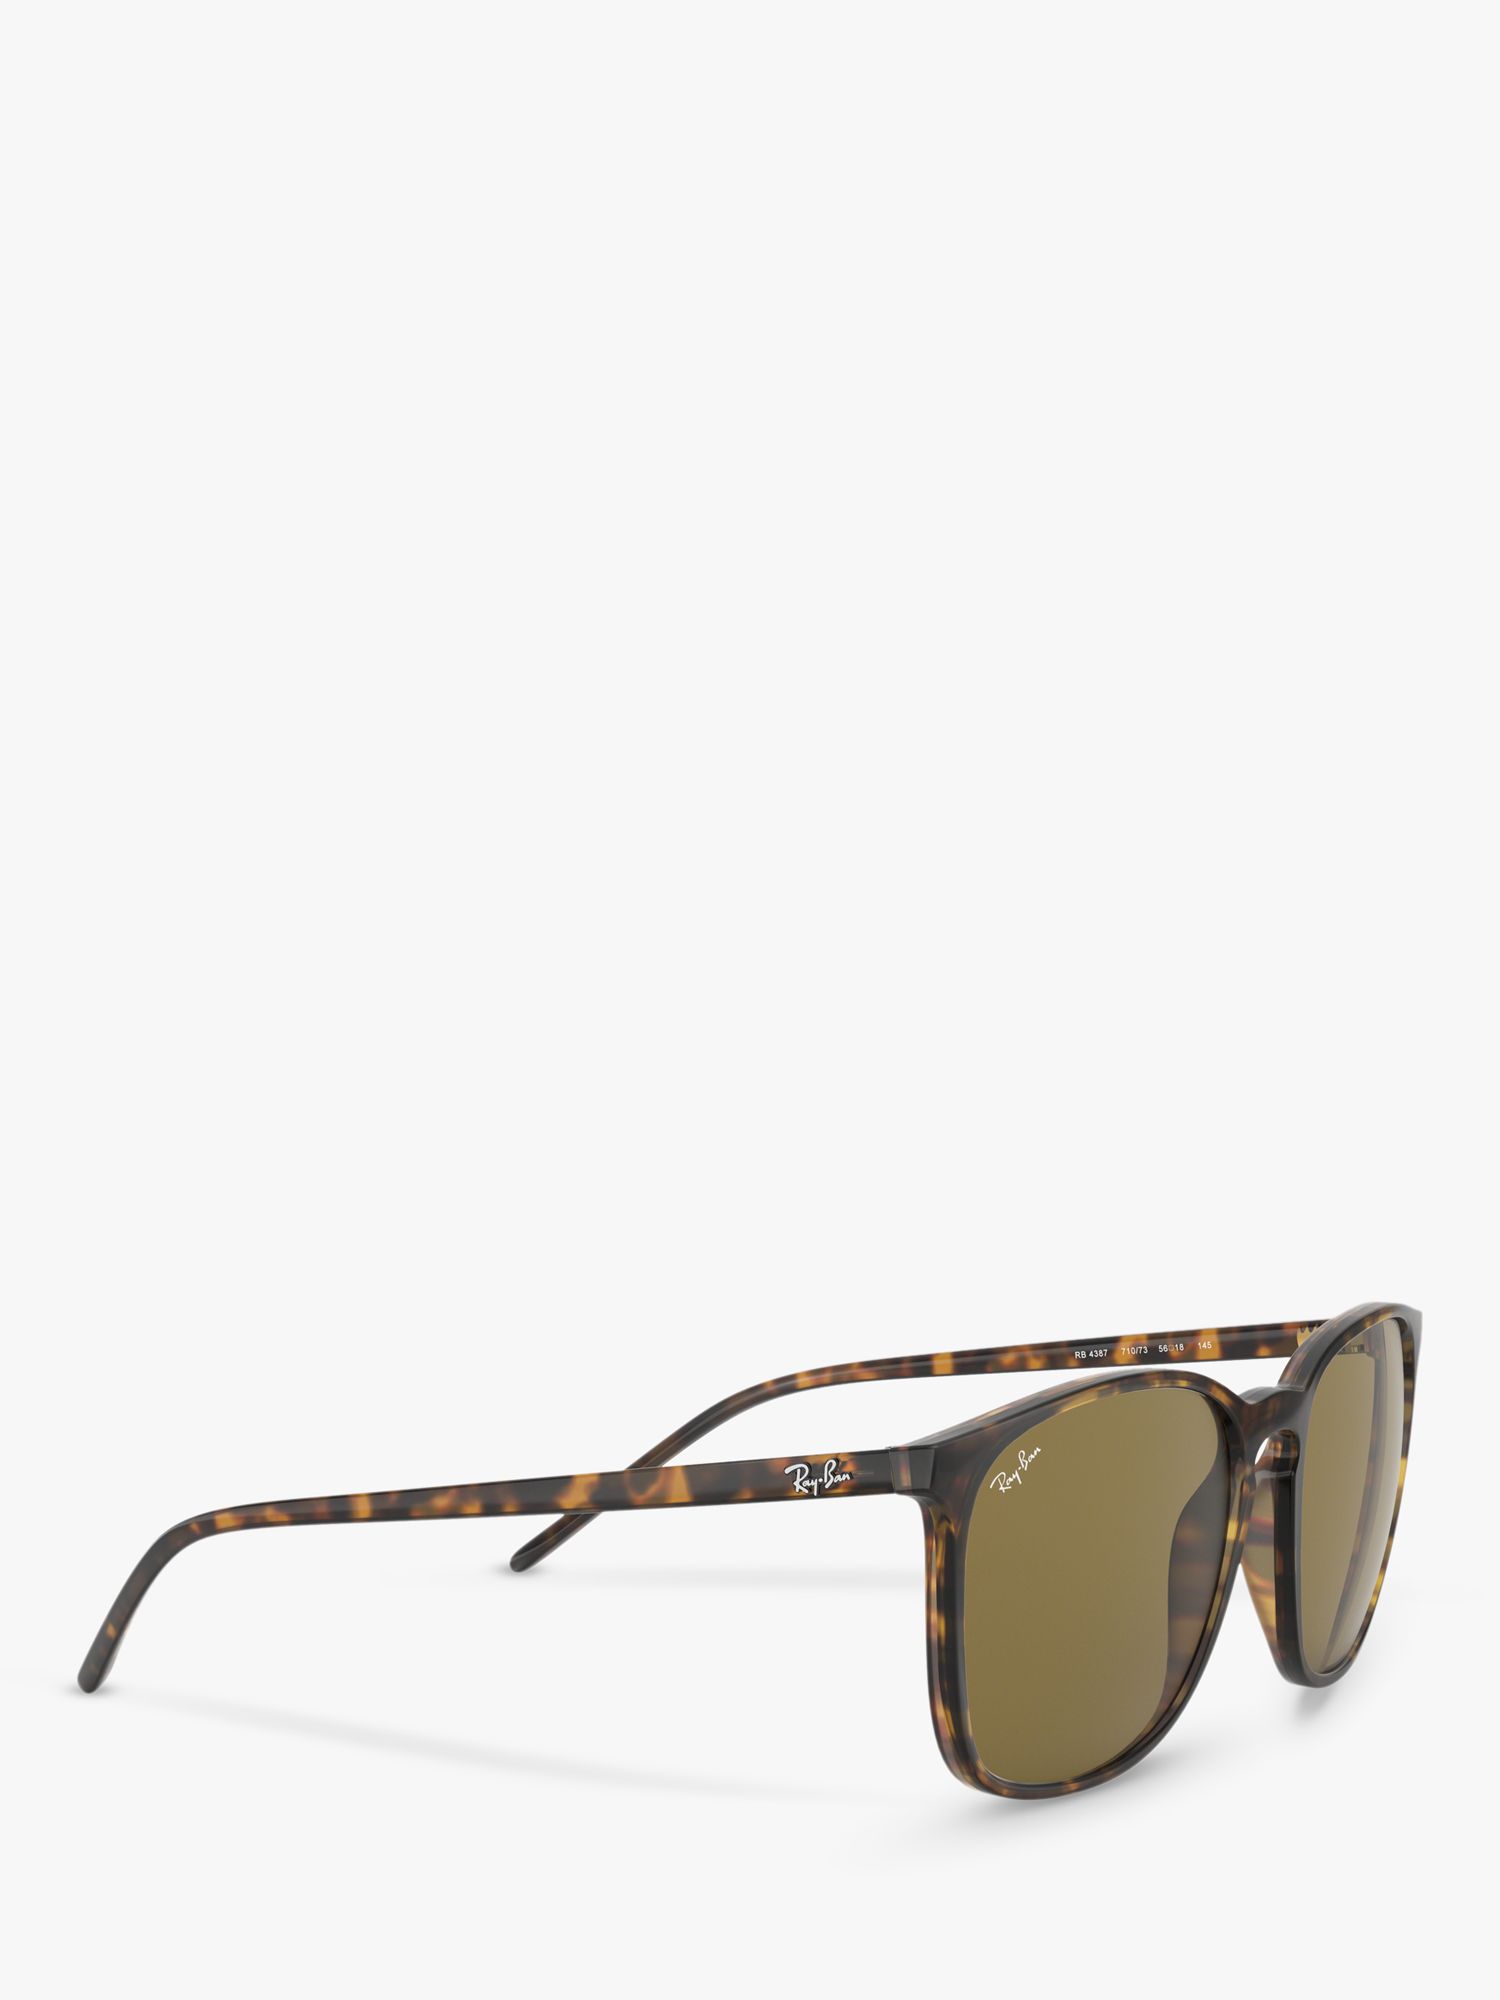 Ray-Ban RB4387 Men's Wayfarer Sunglasses, Havana/Brown at John Lewis &  Partners